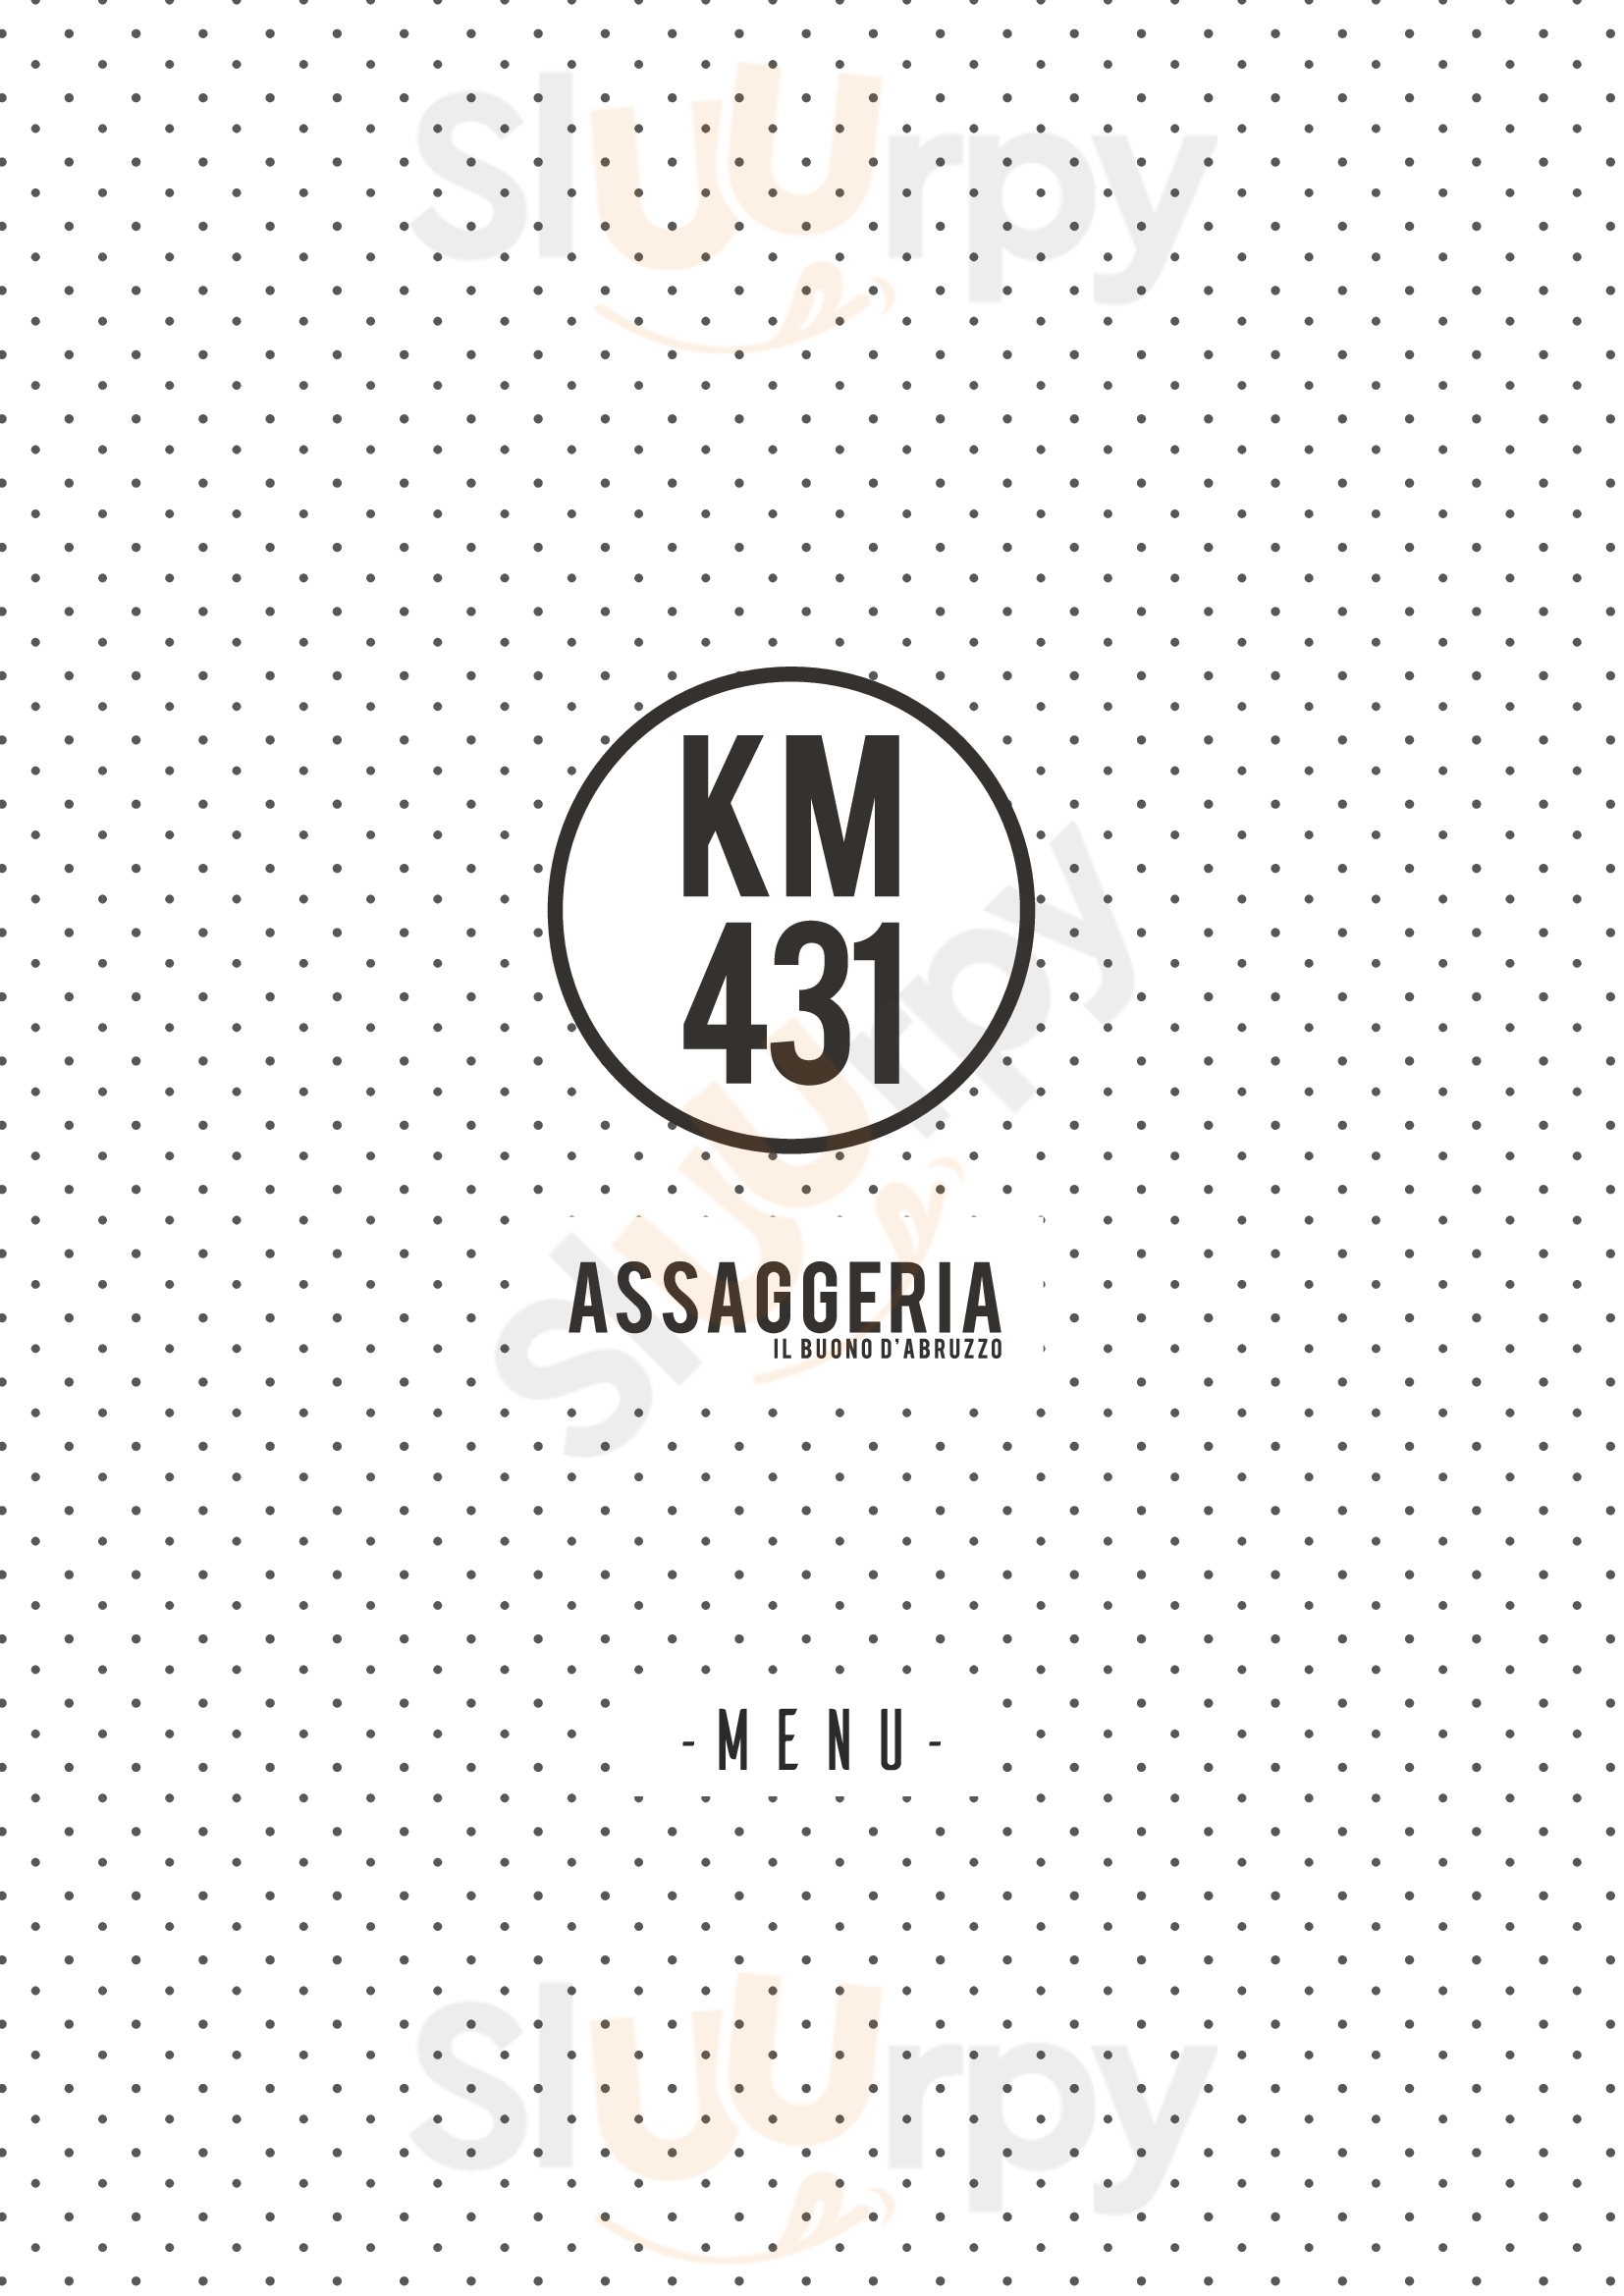 Assaggeria Km 431 Alba Adriatica menù 1 pagina